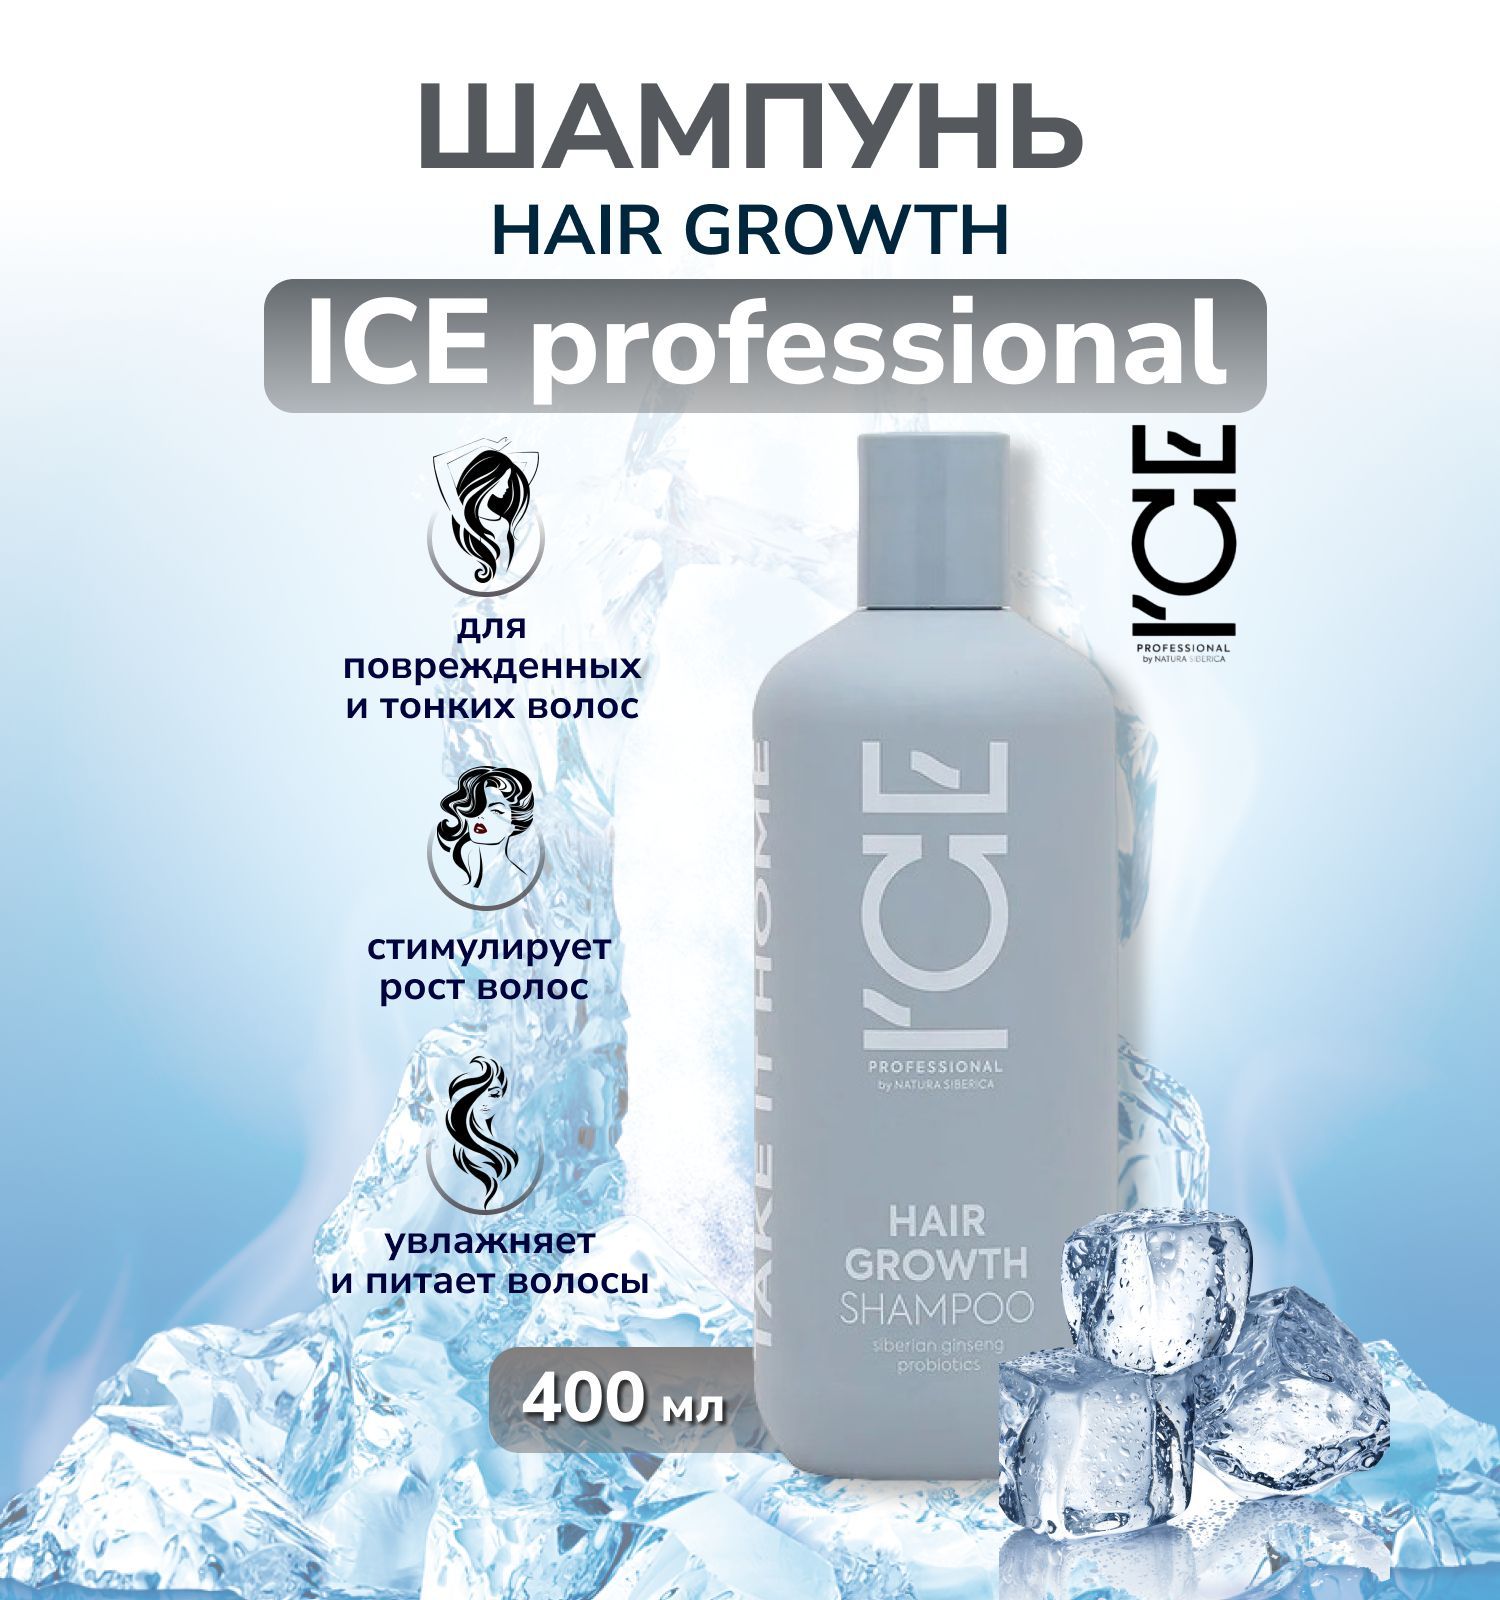 Шампунь натура Сиберика профессиональный Ice. Шампунь ID.